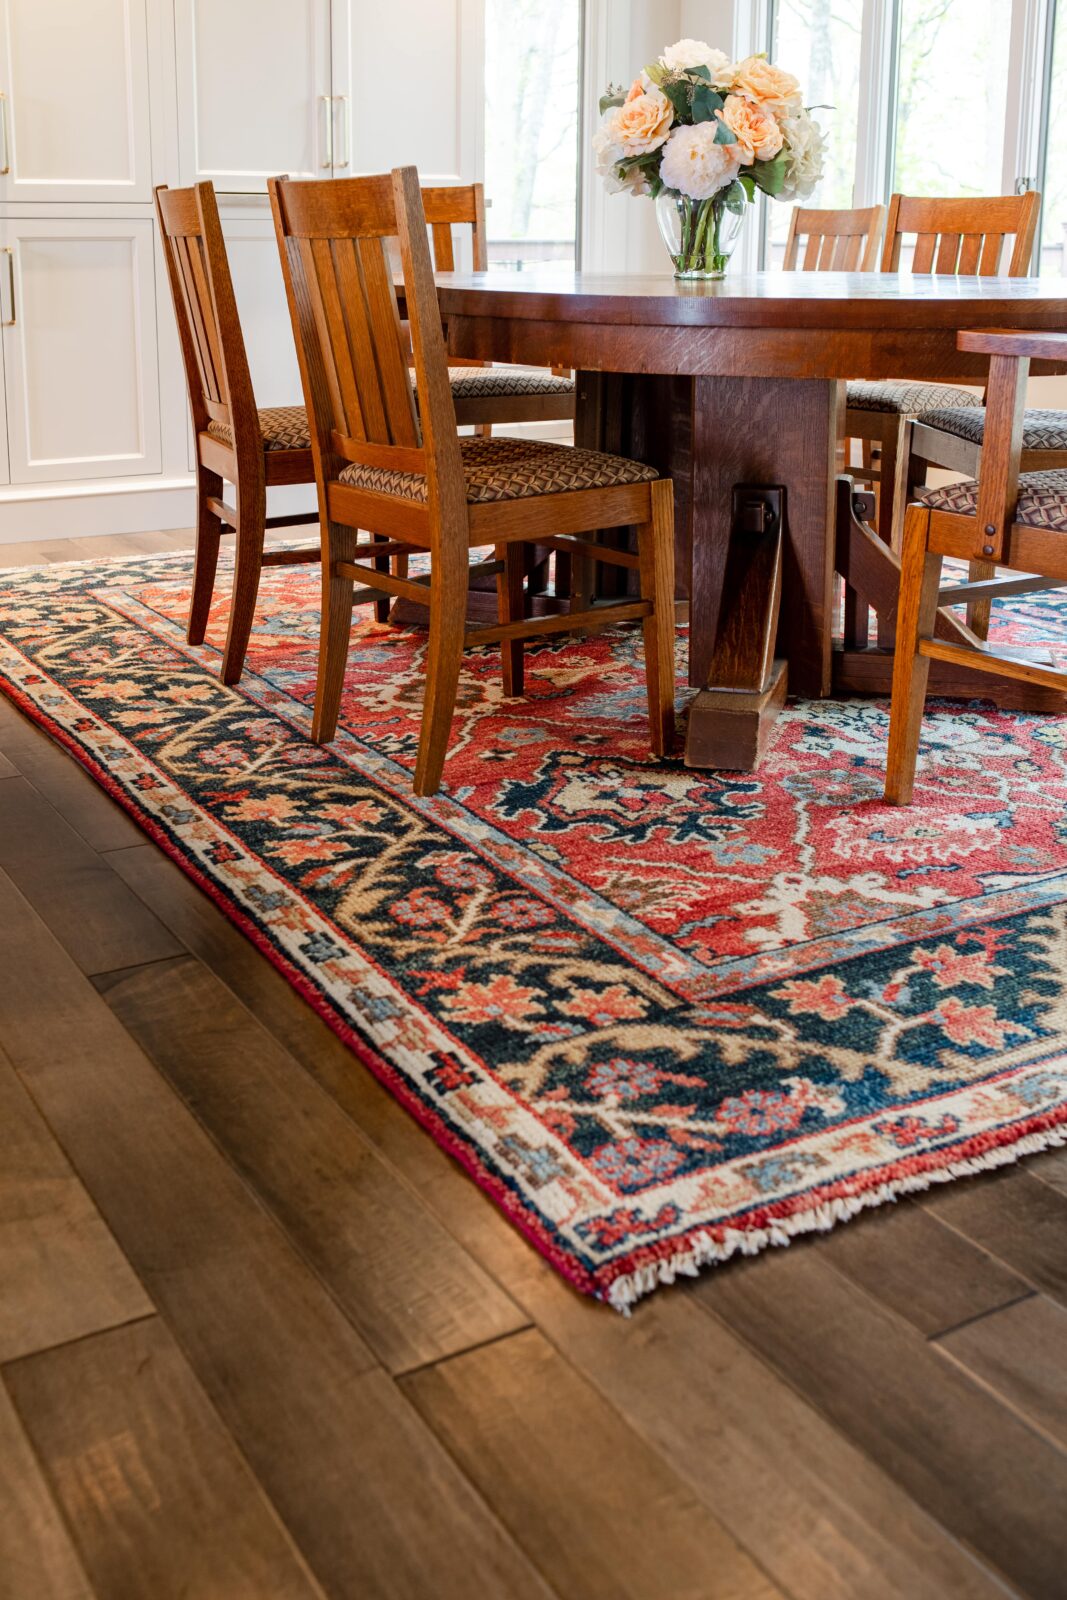 Area rug in diningroom | Carpetland USA